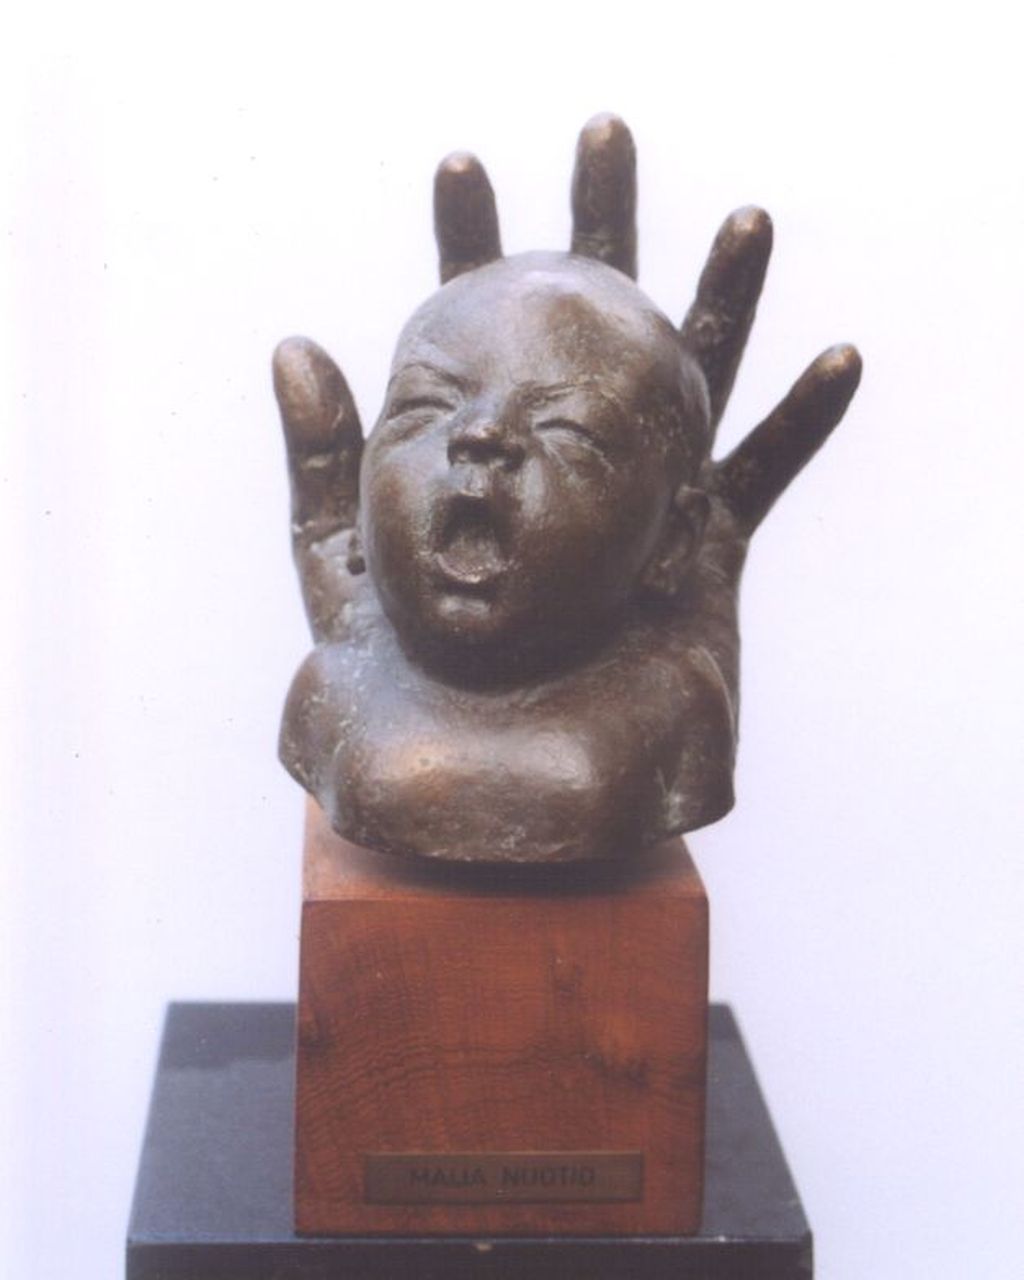 Nuotio M.H.K.  | 'Maija' Hilma Kaarina Nuotio, Babyhoofdje gevat in een hand, Bronze 21,5 x 18,5 cm, gesigneerd op zijkant hand und gedateerd '74